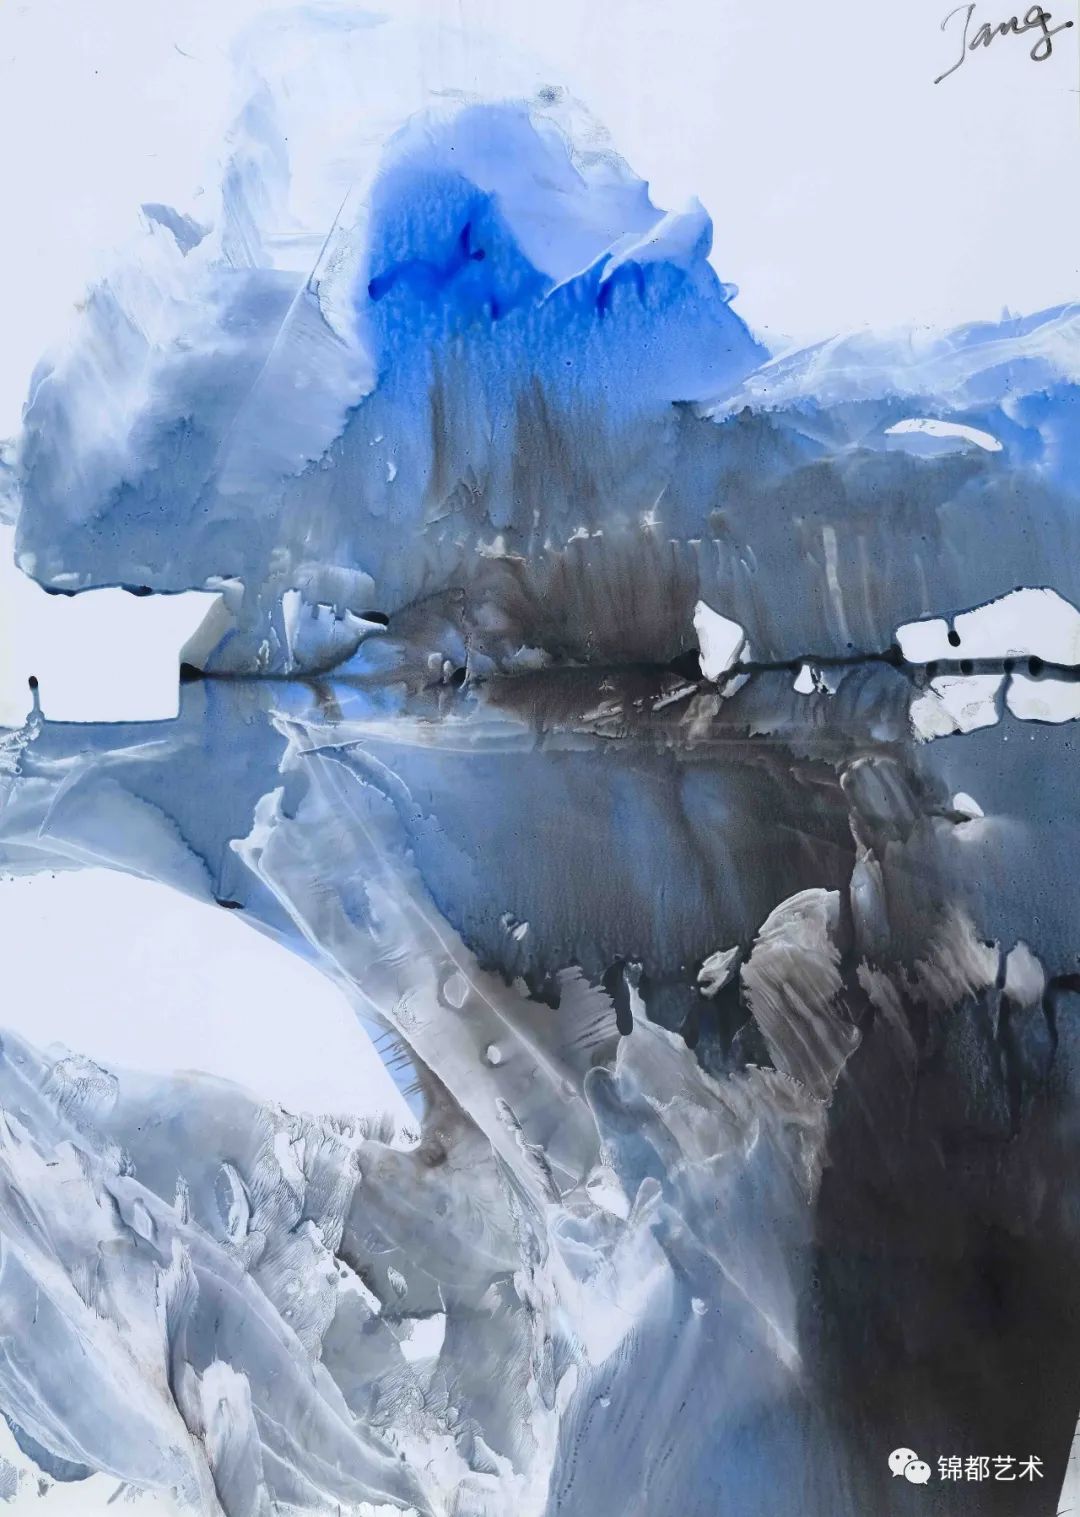 《烟雨霜凝——T抽象绘画学术展》在北京锦都艺术中心开幕